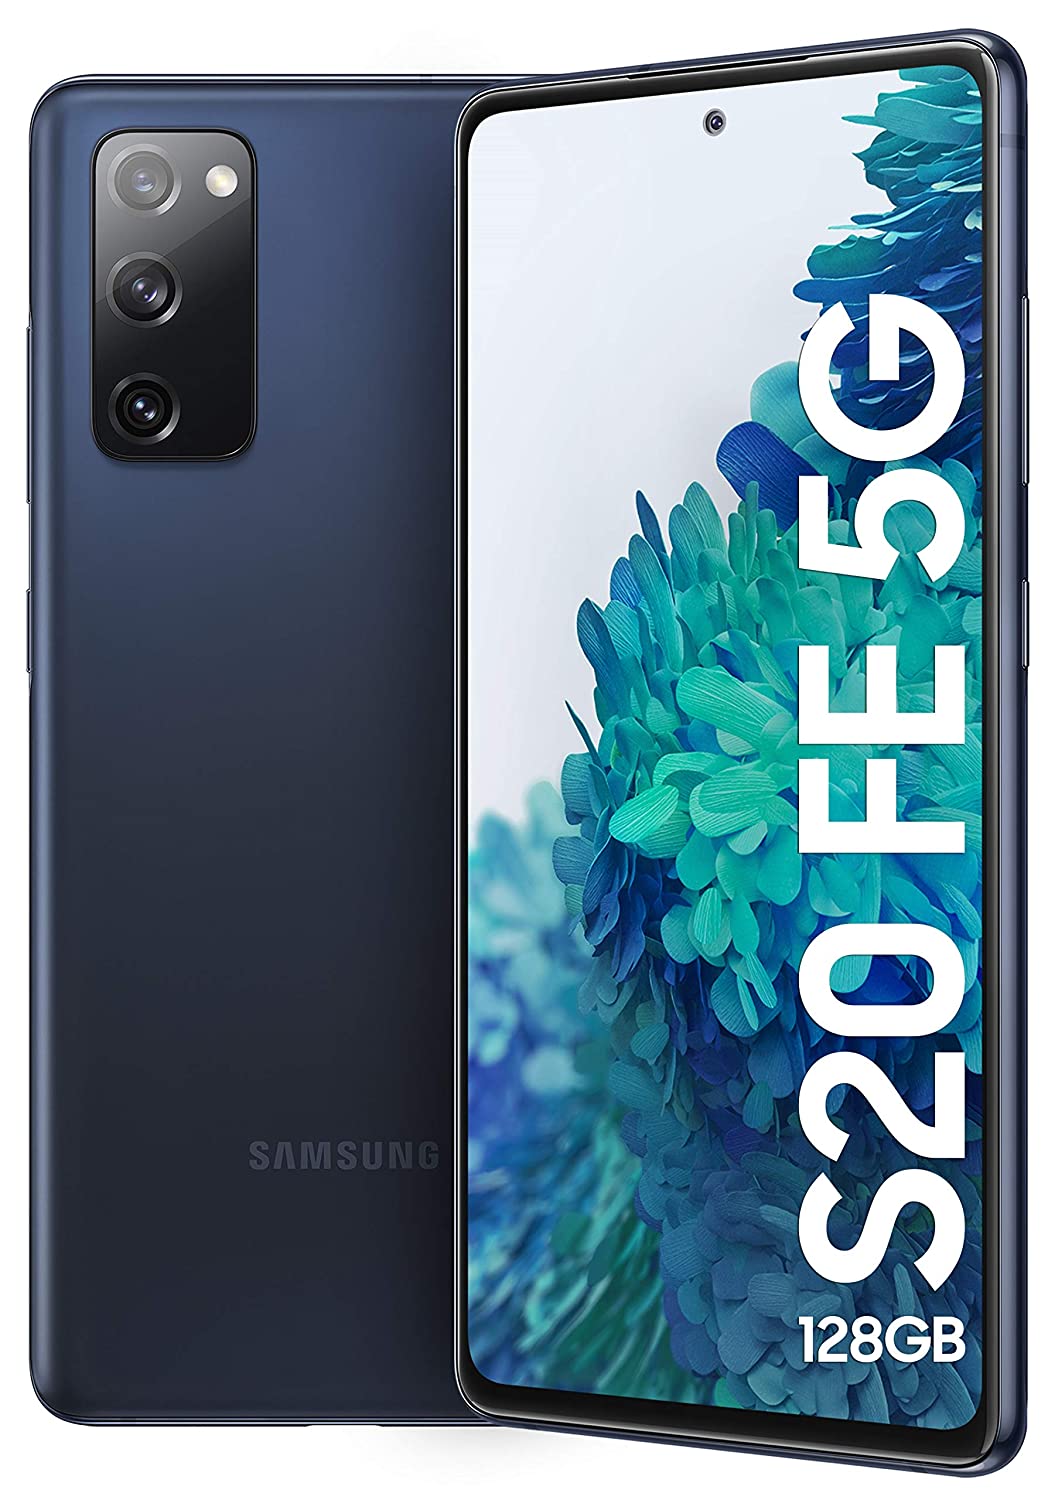 Samsung Galaxy S20 FE 5G: 18 जून को इस फोन पर आने वाला है एक जबरदस्त ऑफर, जानिये पूरी डील